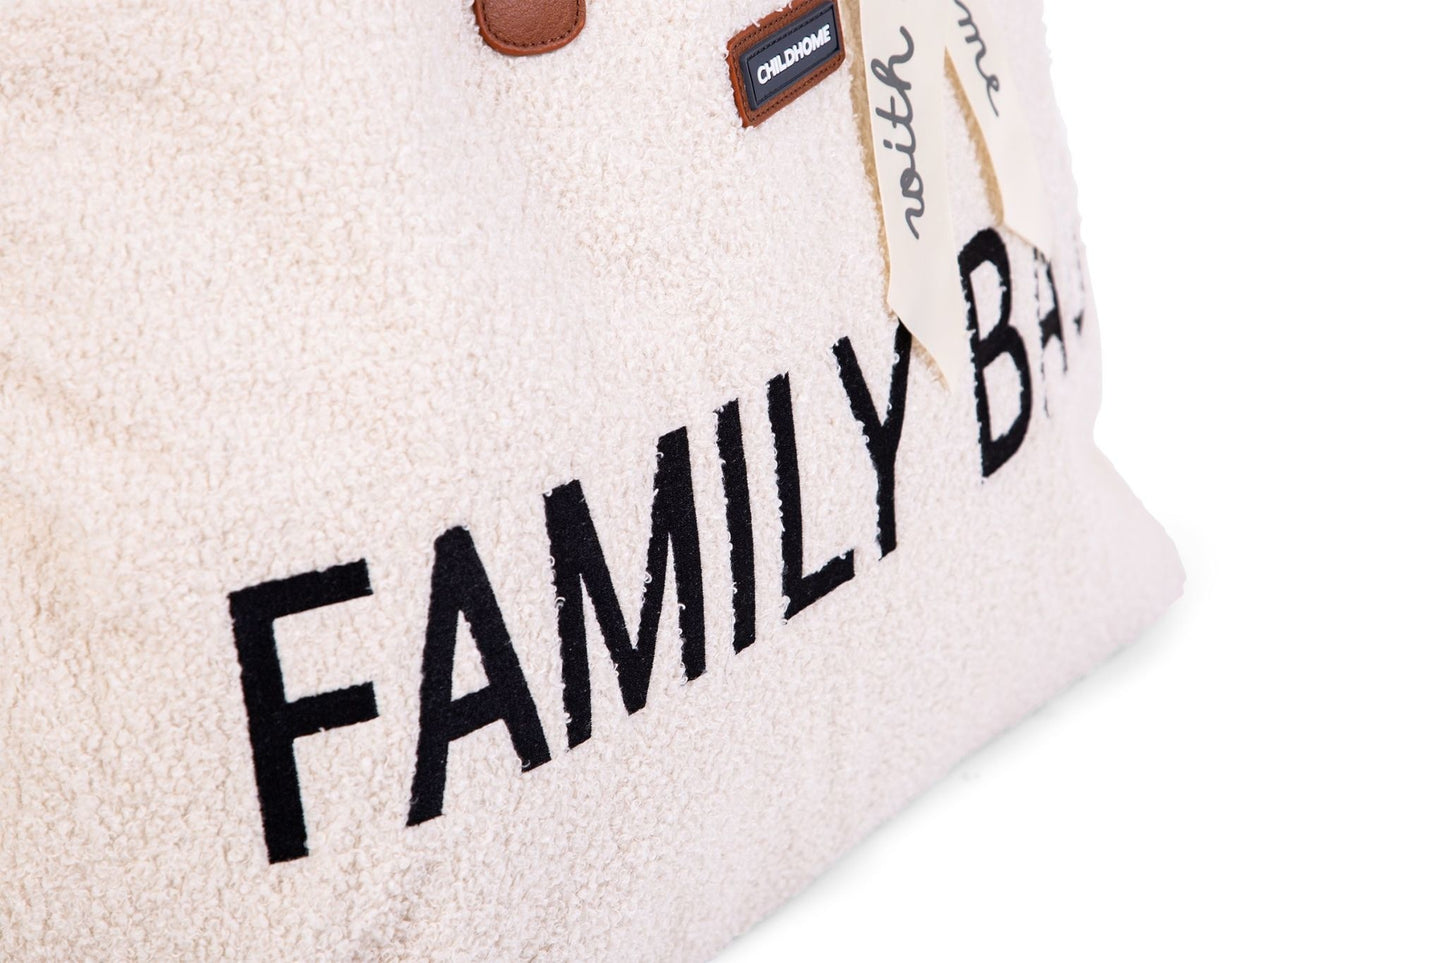 Family Bag Verzorgingstas - Teddy Ecru